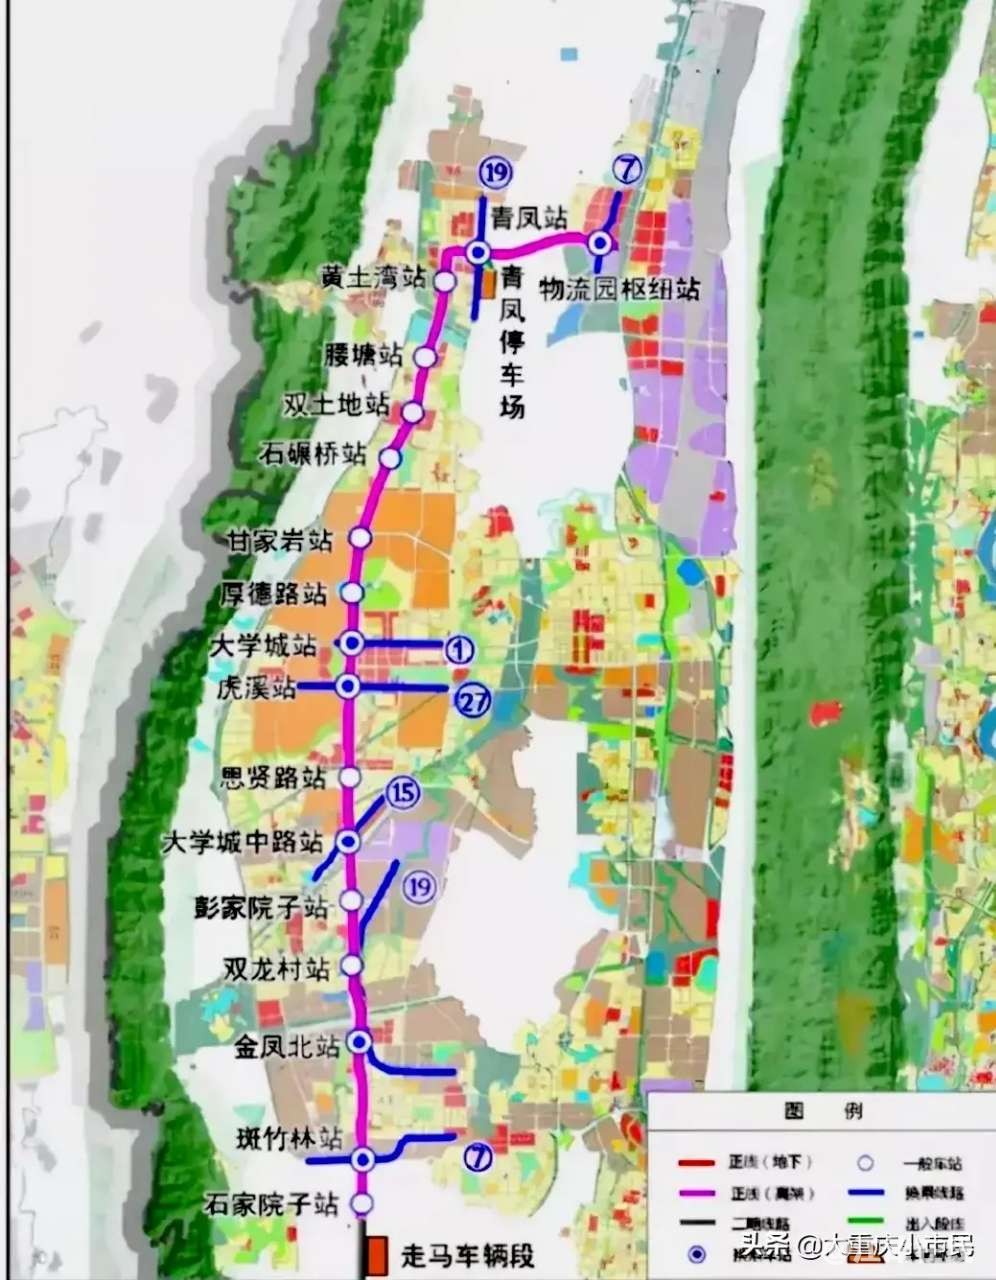 江津加油重庆轨道交通17号线一期最新方案公布延长到双福的二期争取